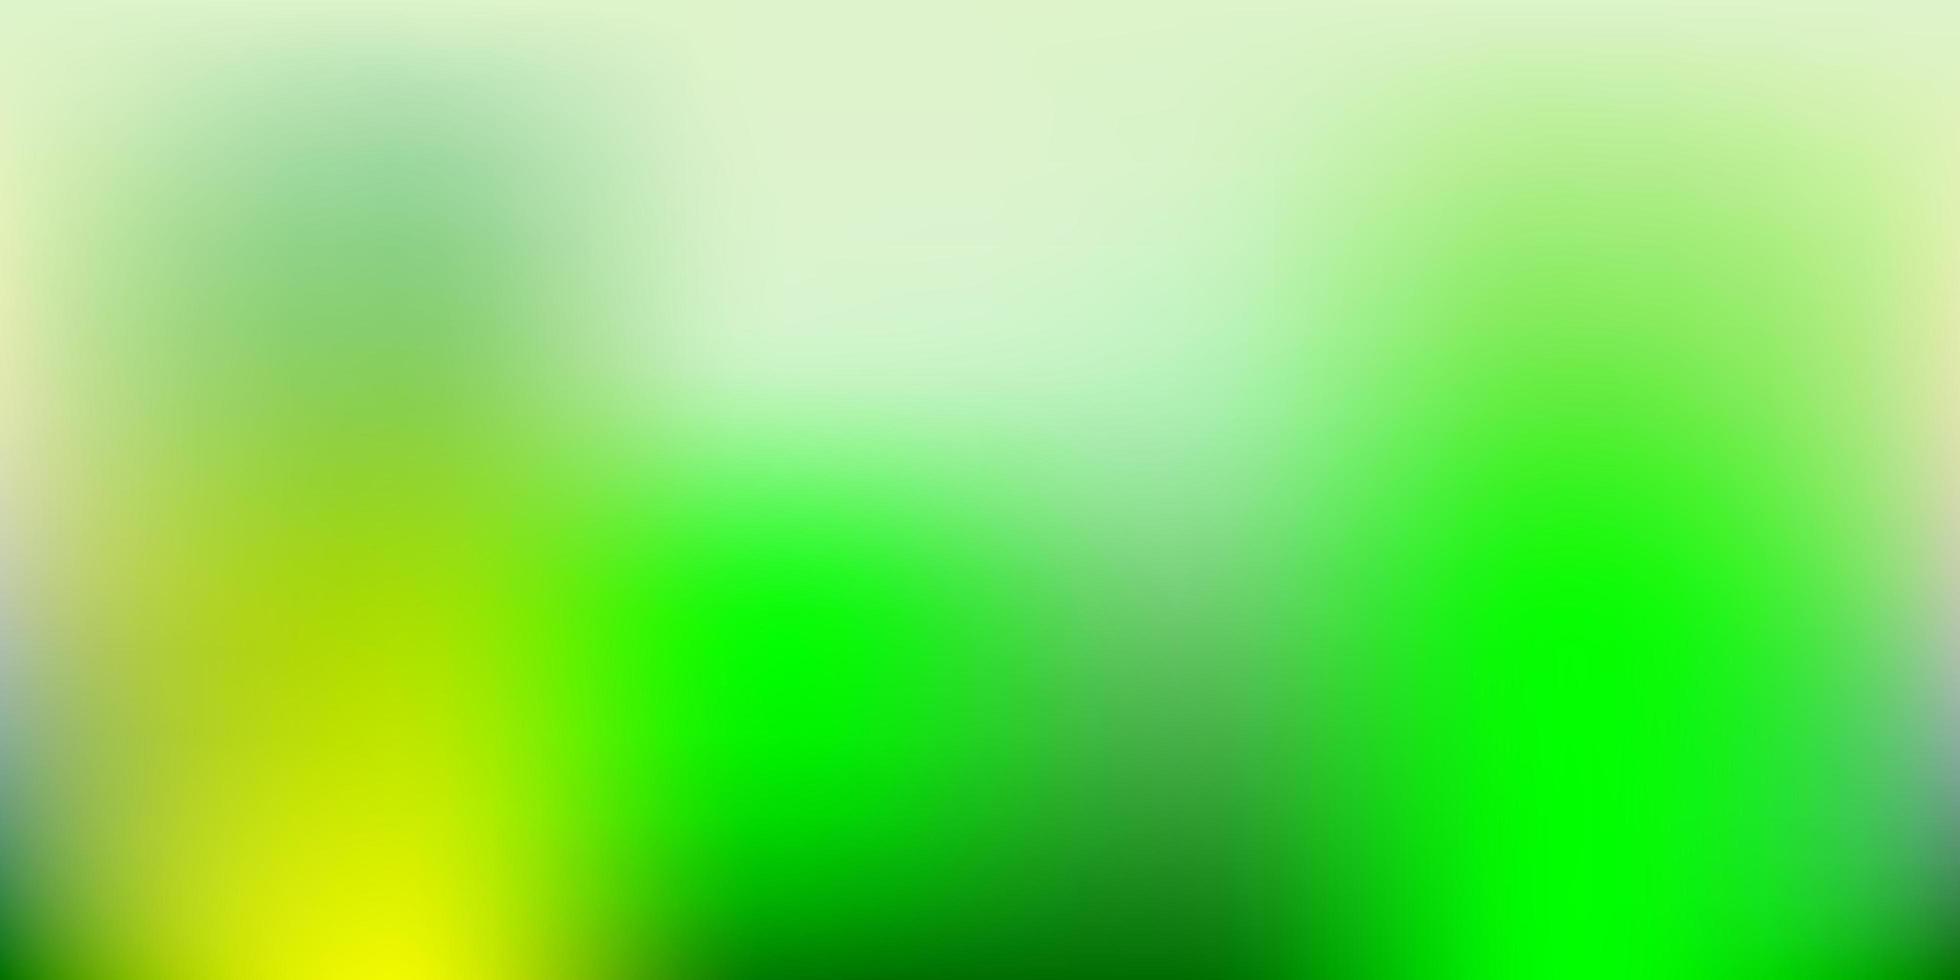 dessin de flou abstrait vecteur vert clair, jaune.